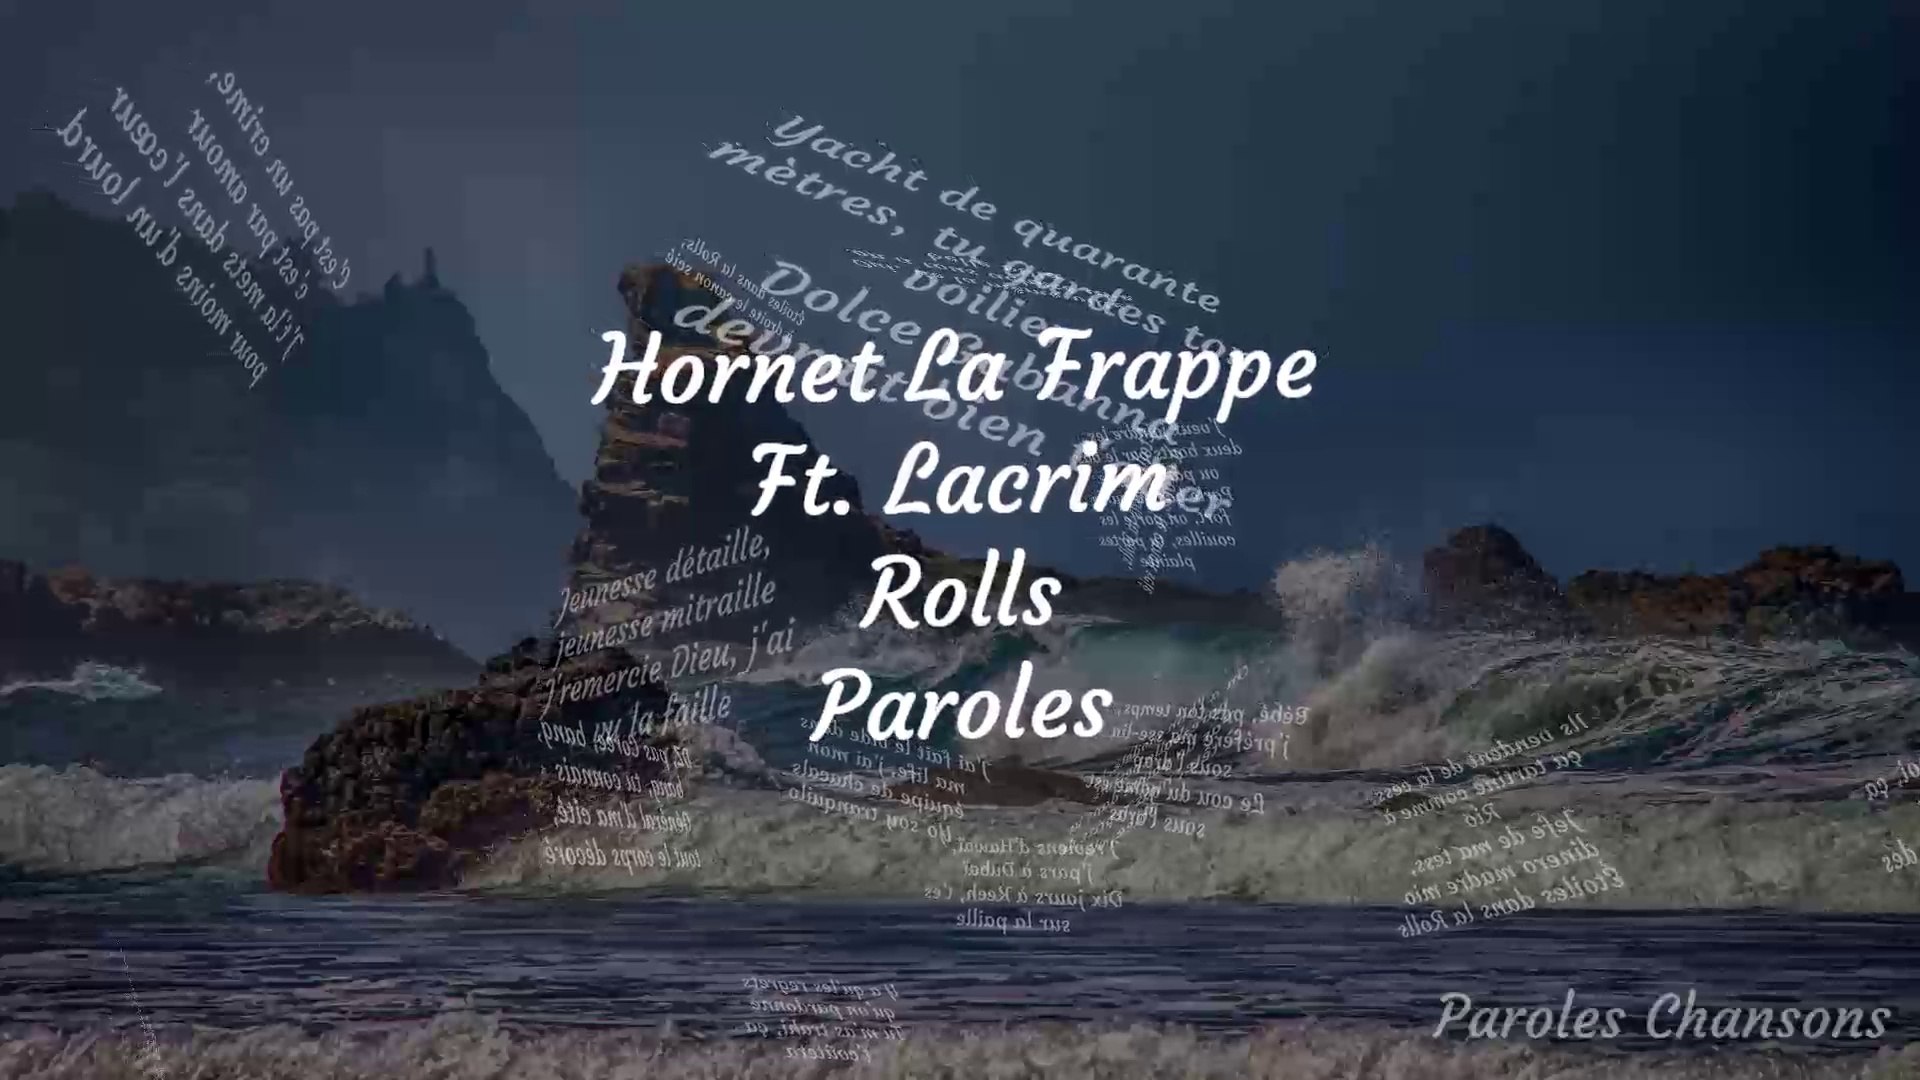 Hornet La Frappe - Terrain glissant (feat. Kalash Criminel)